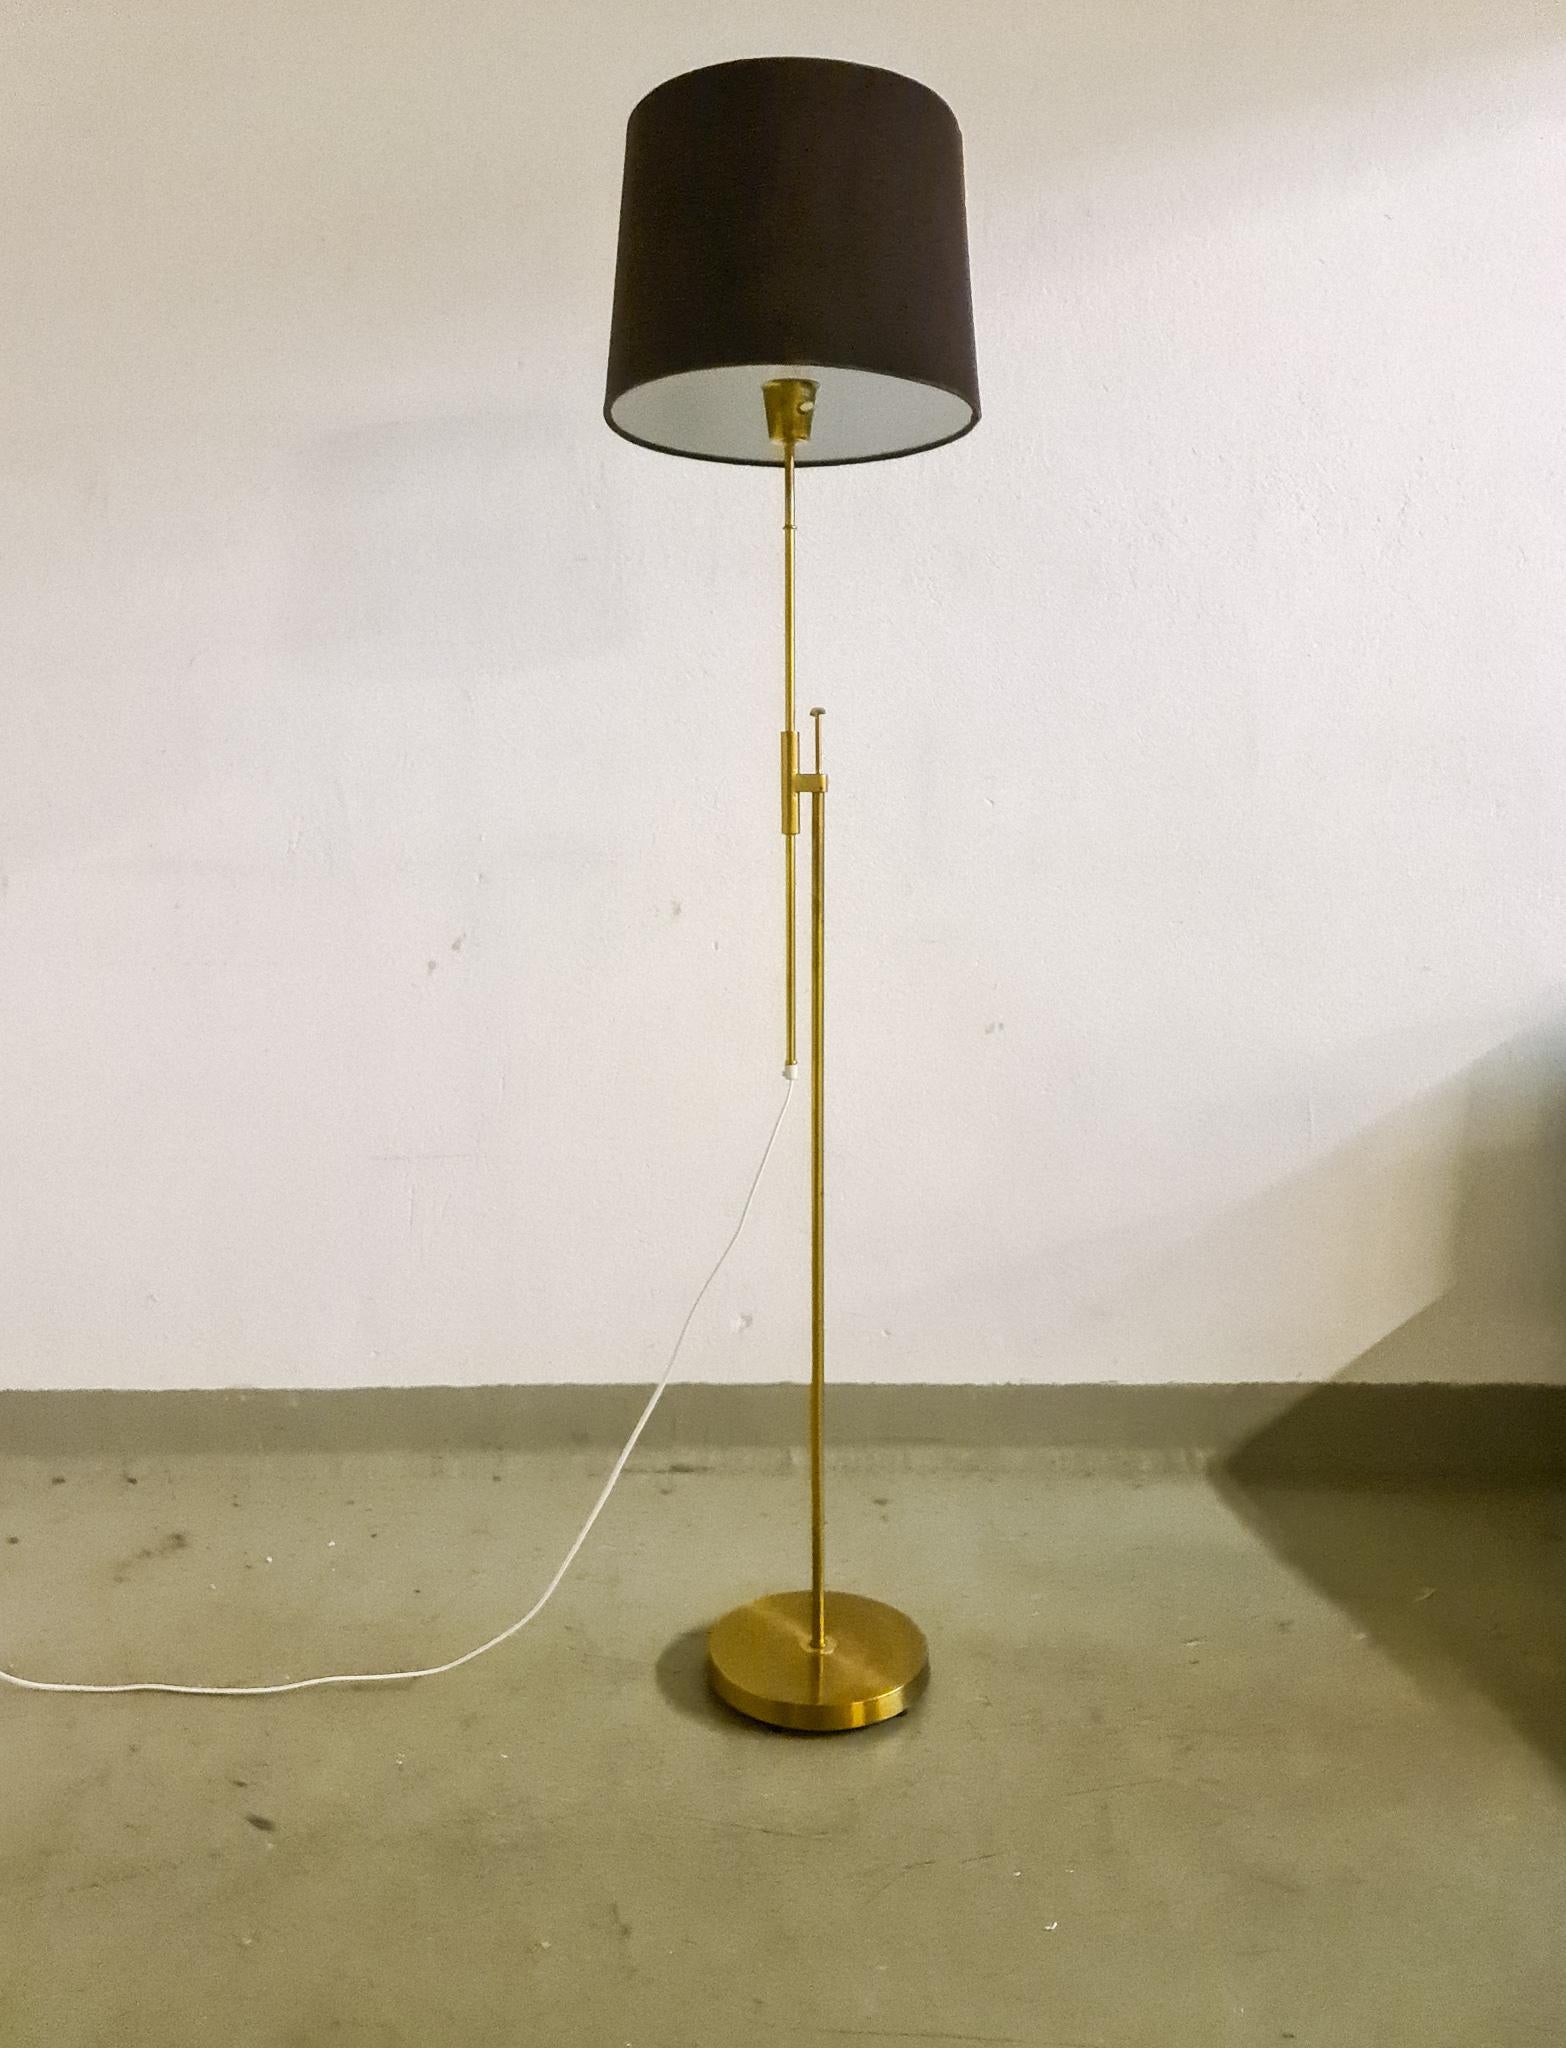 Cette lampe a été fabriquée en Suède chez Falkenbergs Belysning. Merveilleuse combinaison de laiton assemblé avec une hauteur réglable.

Bon état de fonctionnement. L'abat-jour en velours n'est pas d'origine ; il s'agit d'un nouveau et il est